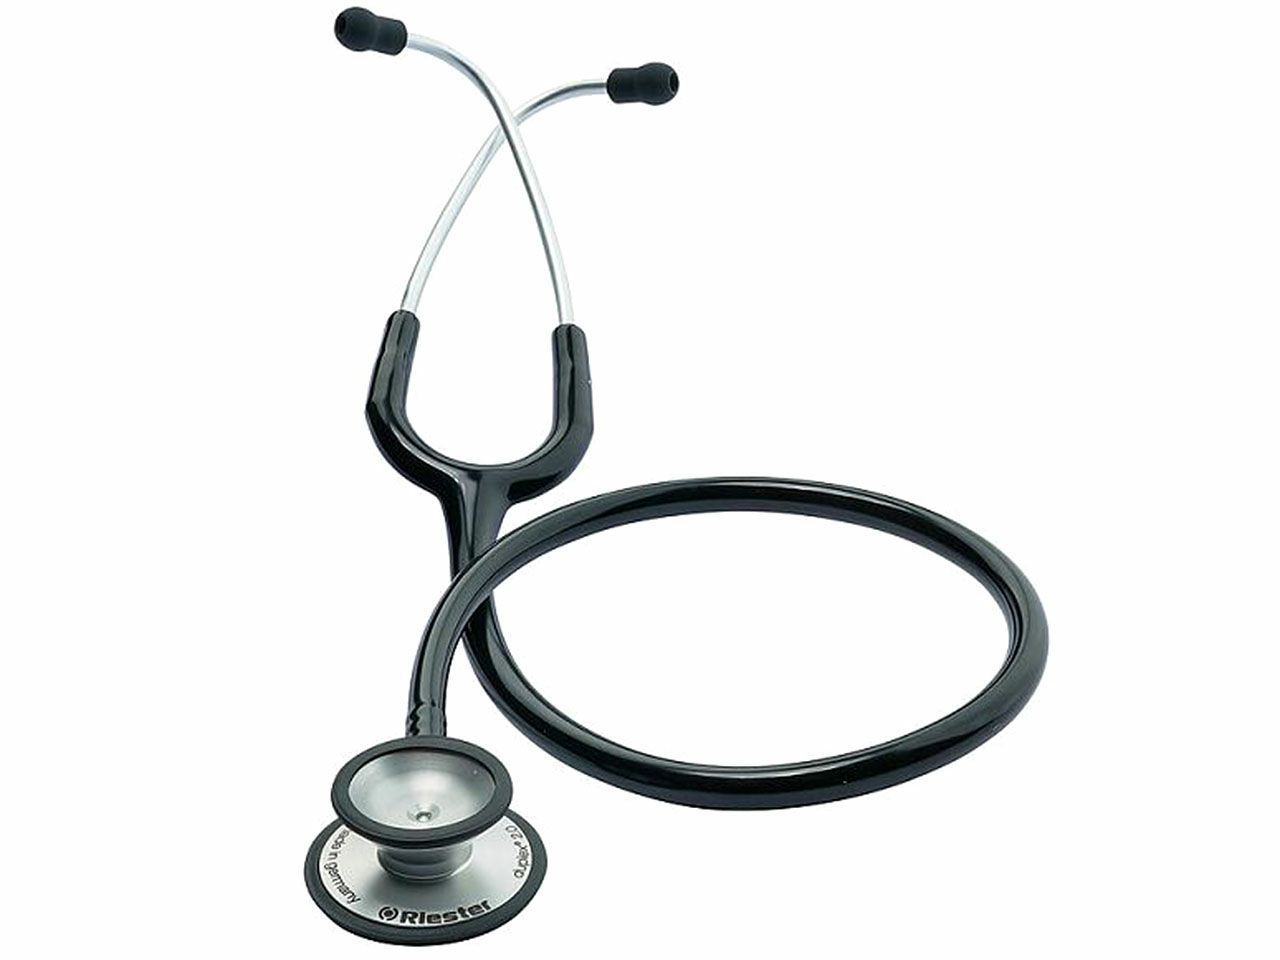 stetoskop-riester-duplex-20-crni-ri4210-01_1.jpg